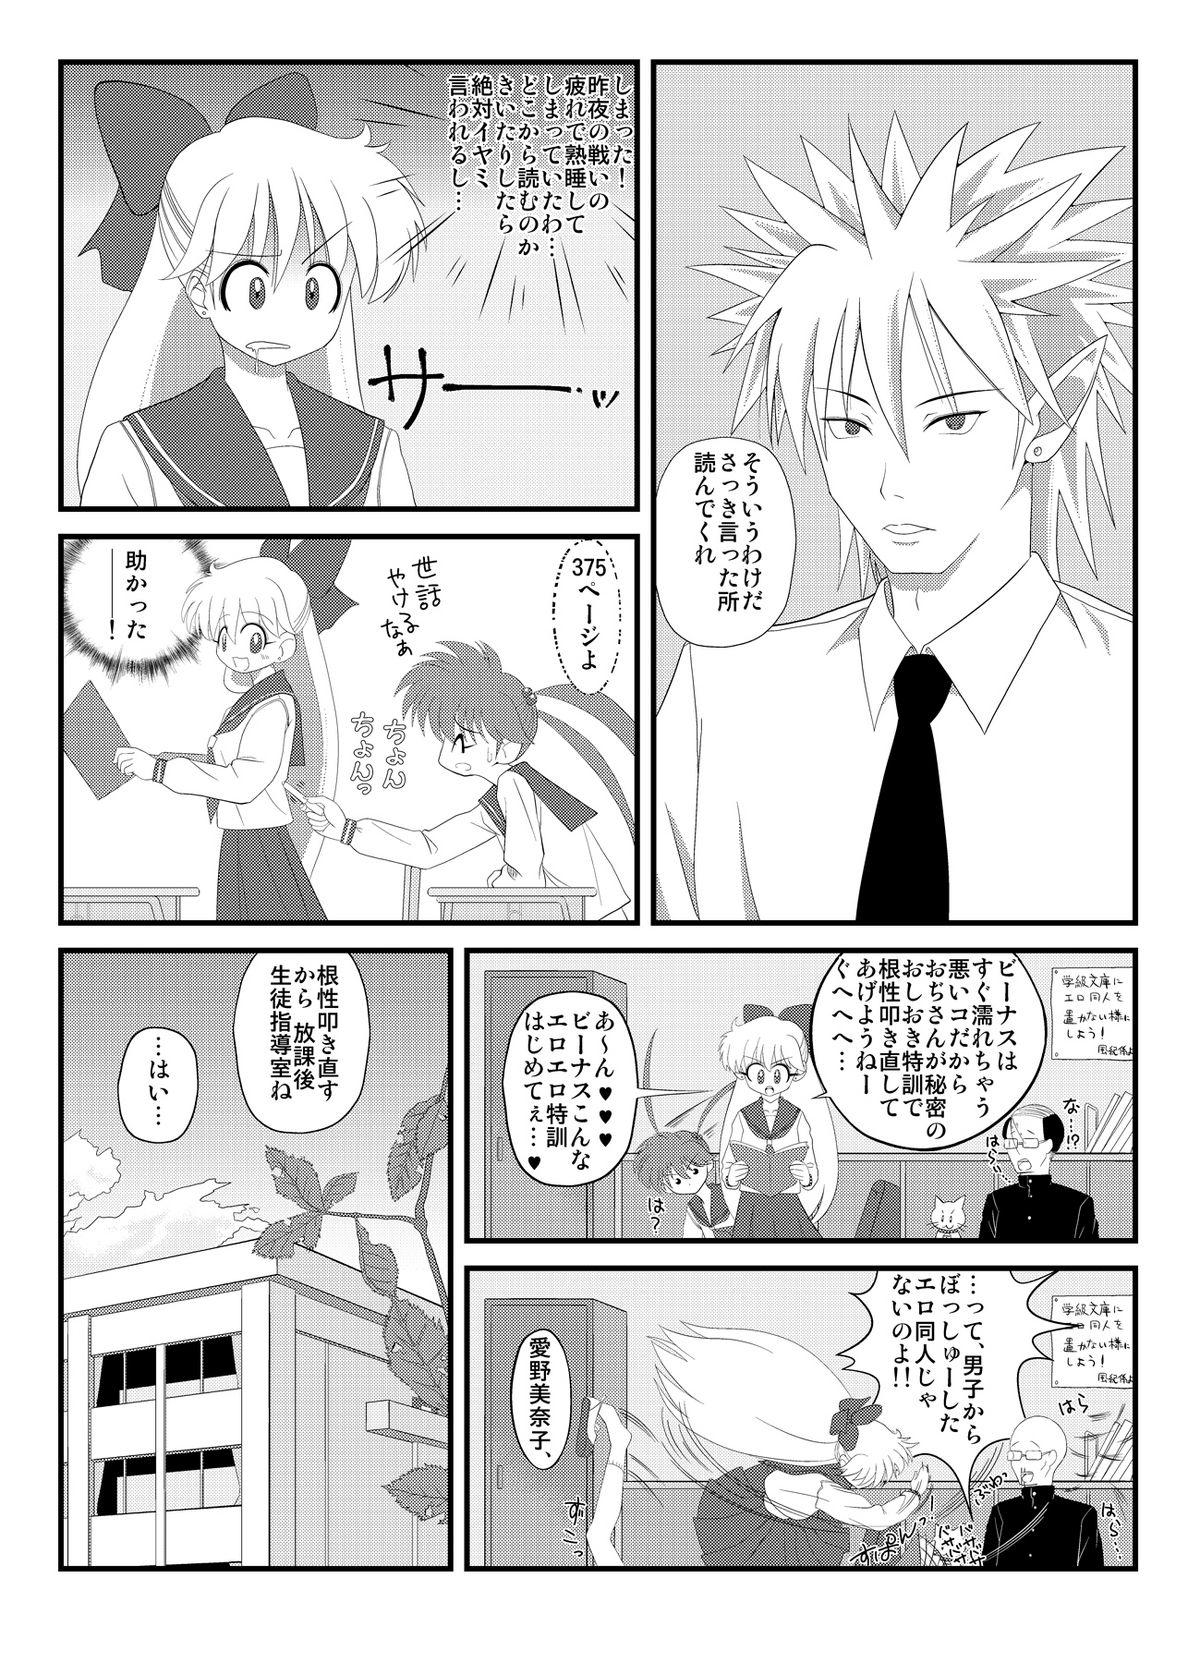 Free Amature 先生と美奈子の秘密特訓 - Sailor moon Boob - Page 9